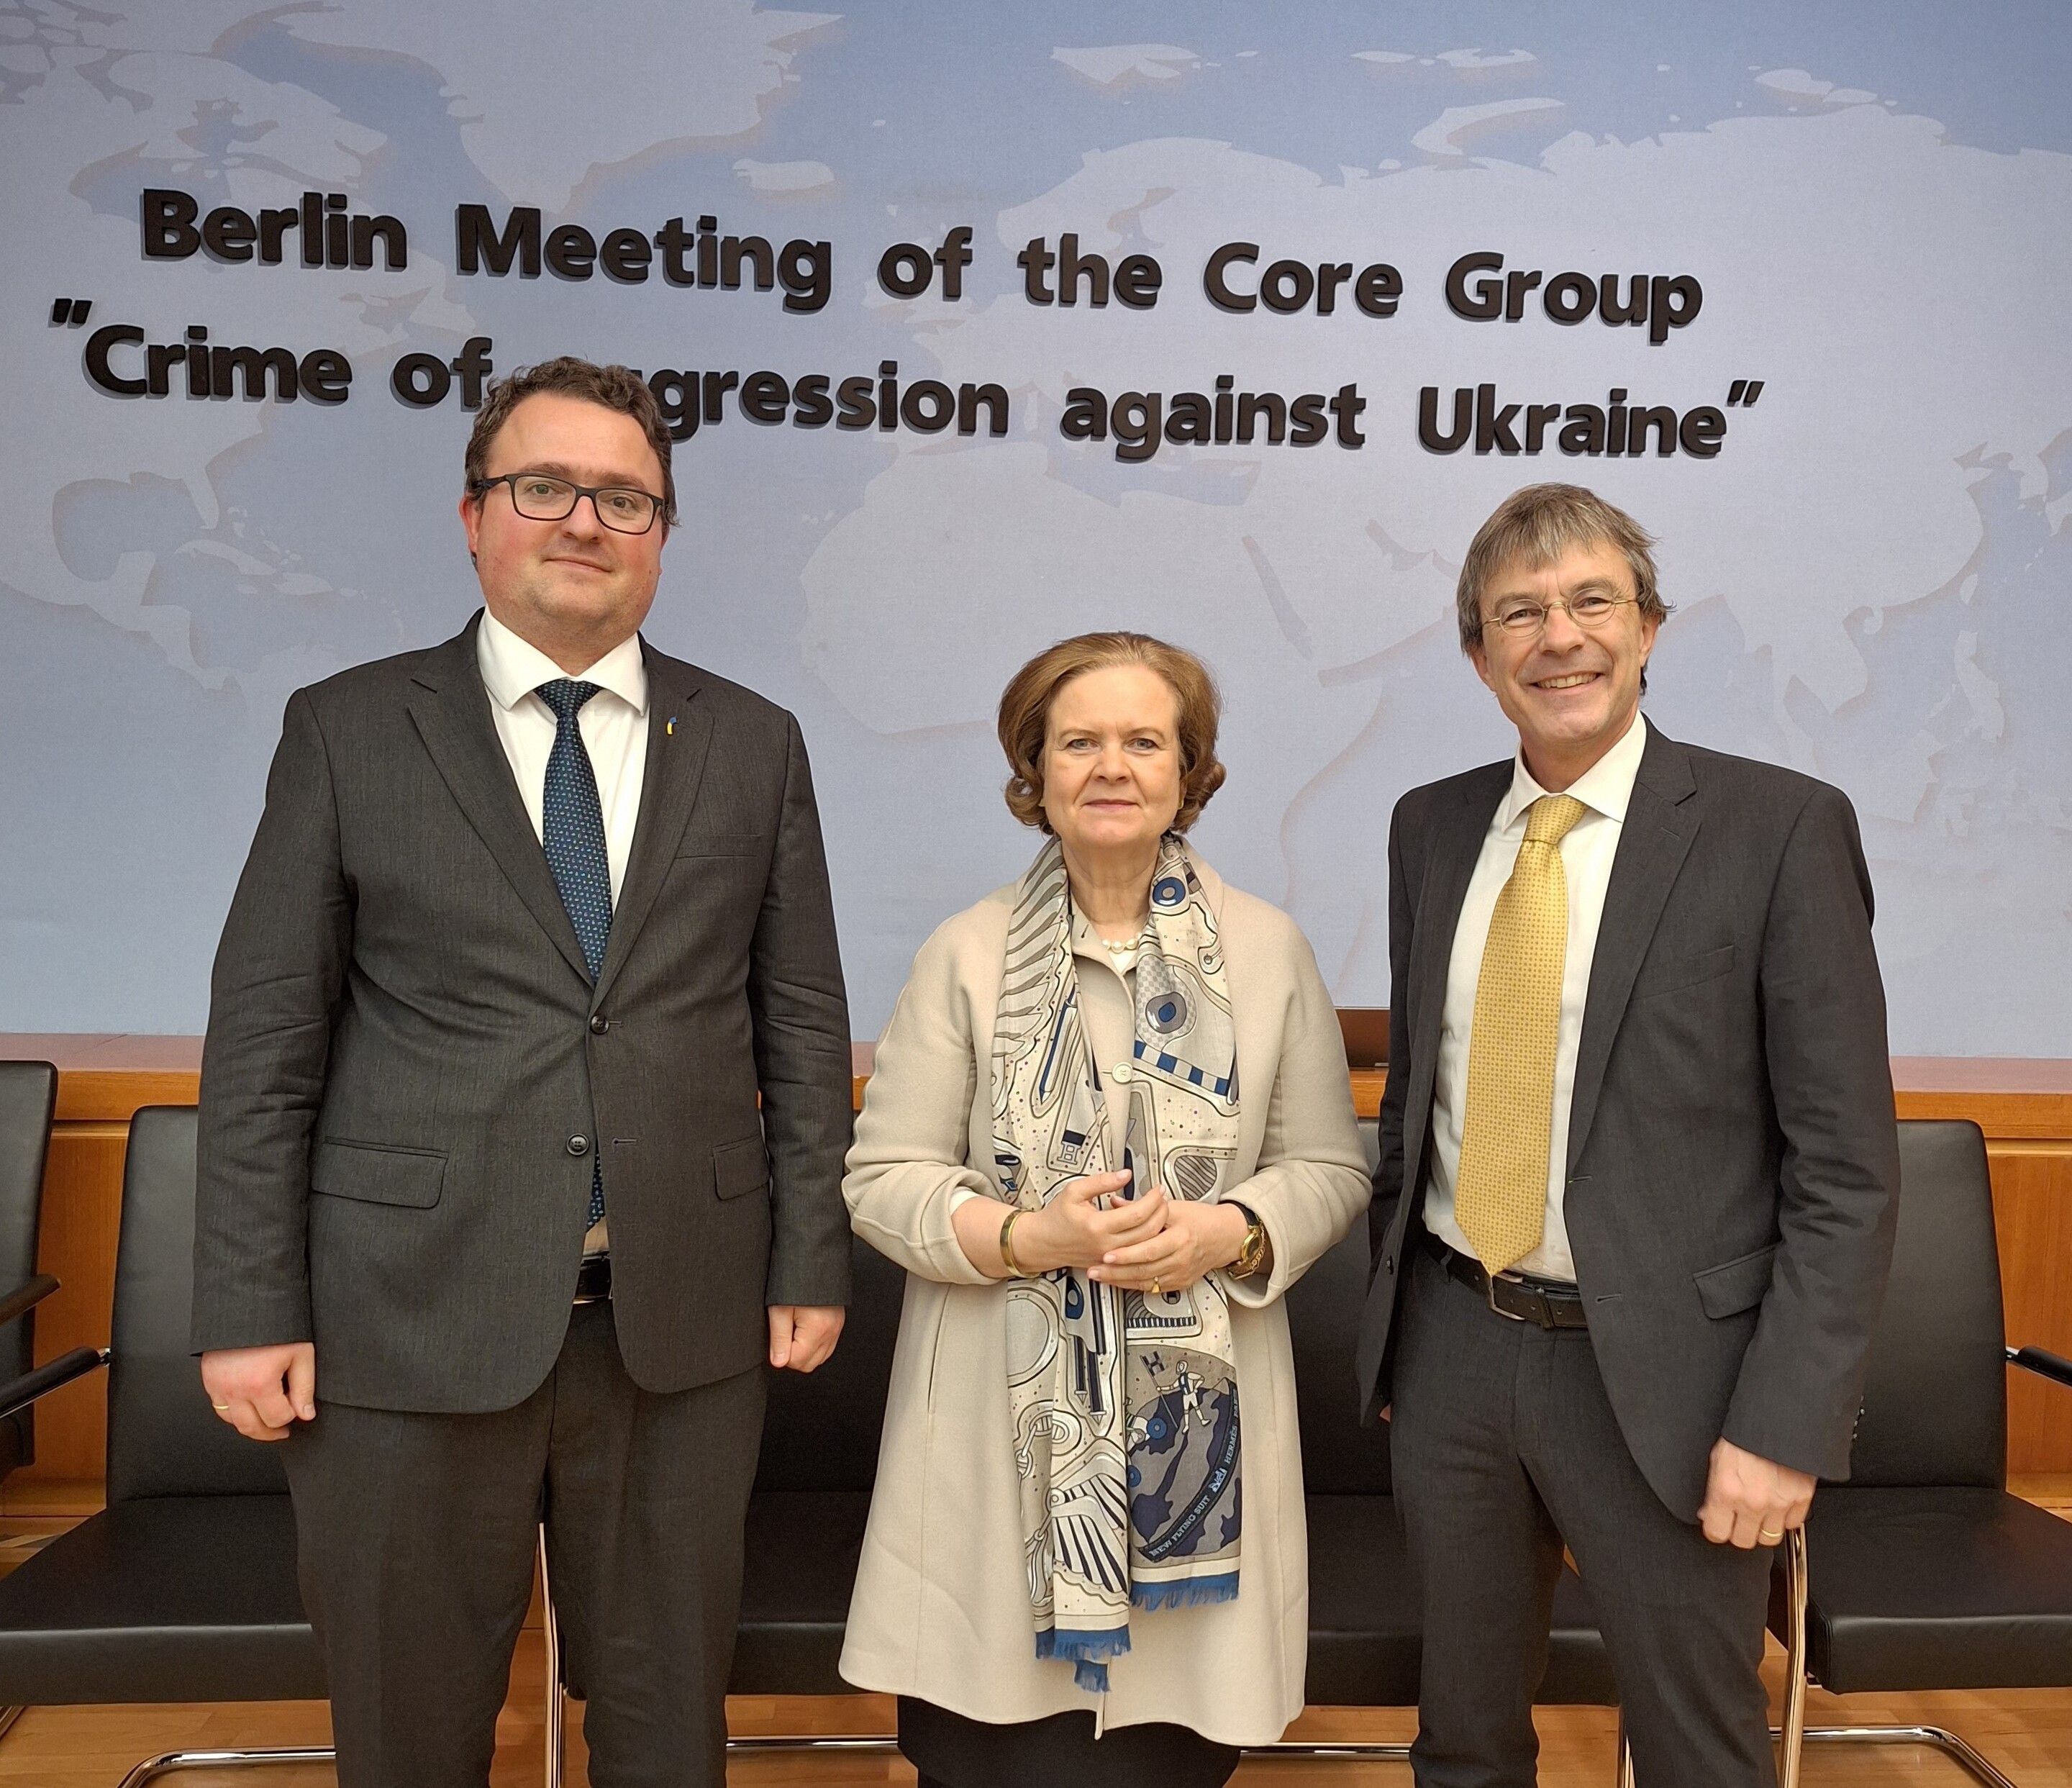 Швейцарію на зустрічі в Берліні представляв посол, голова Управління міжнародного громадського права Франц Перрес.